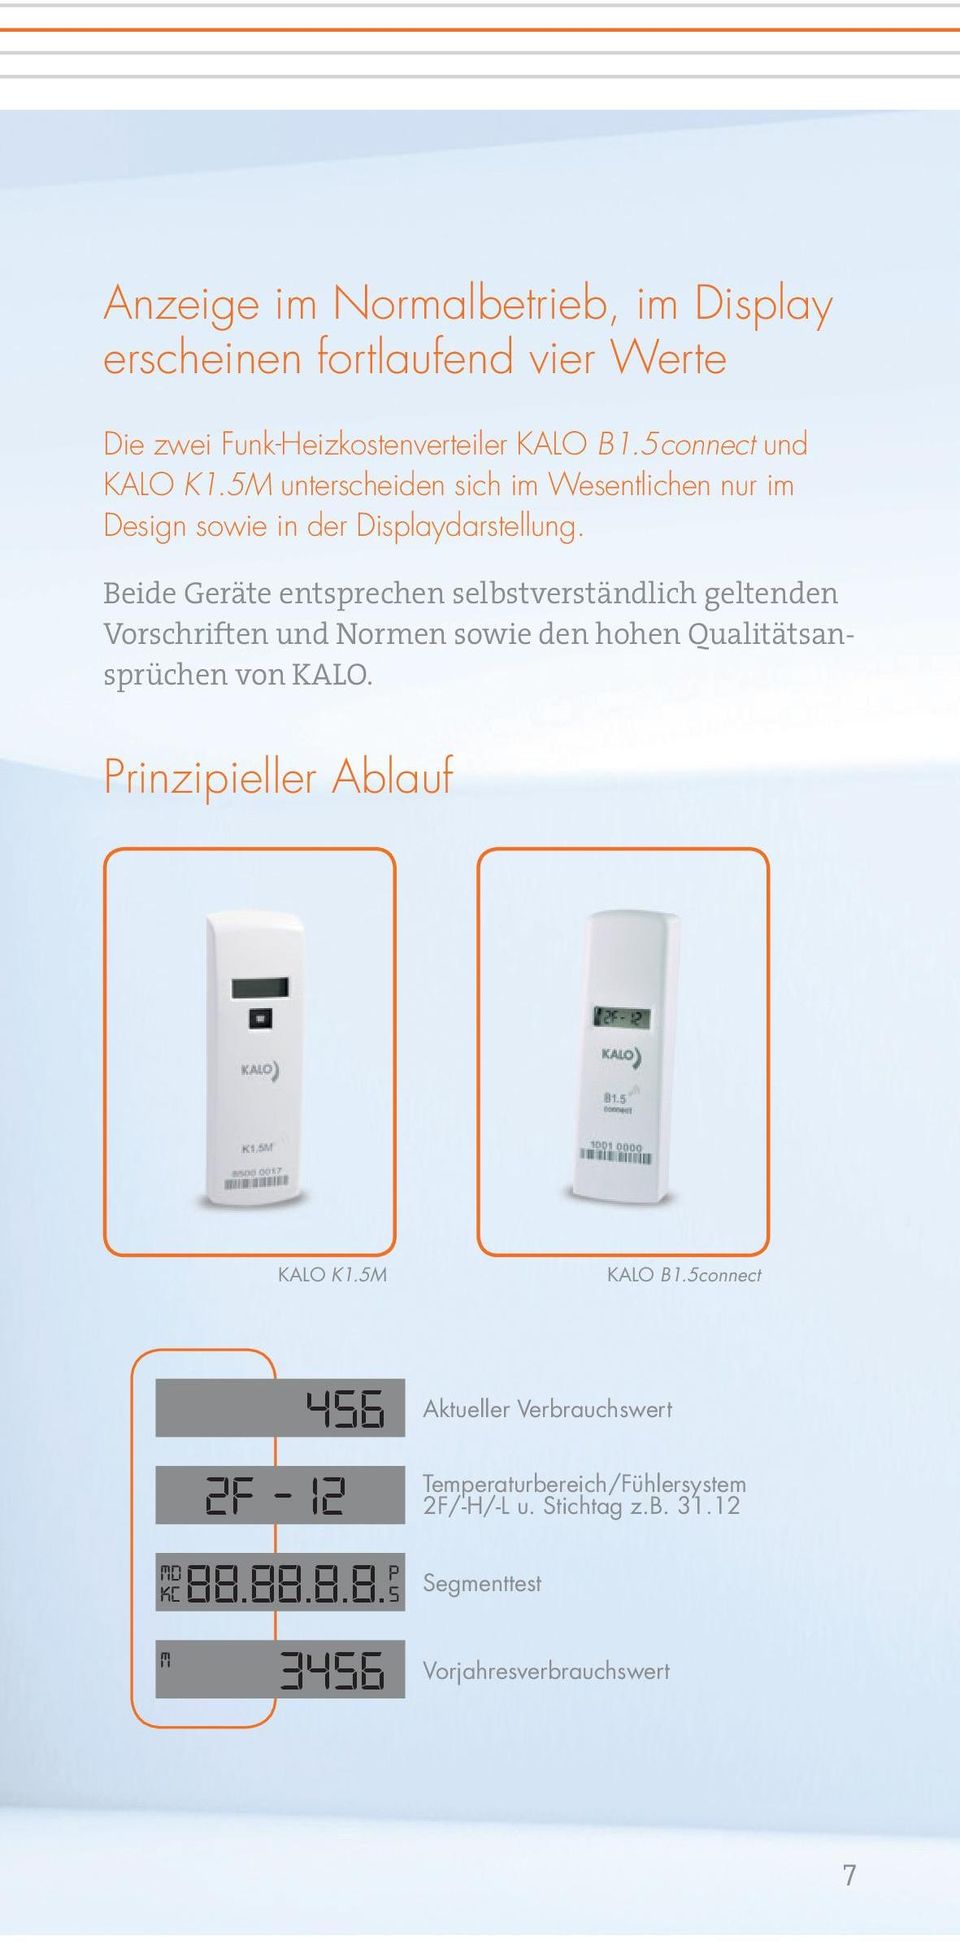 Beide Geräte entsprechen selbstverständlich geltenden Vorschriften und Normen sowie den hohen Qualitätsansprüchen von KALO.